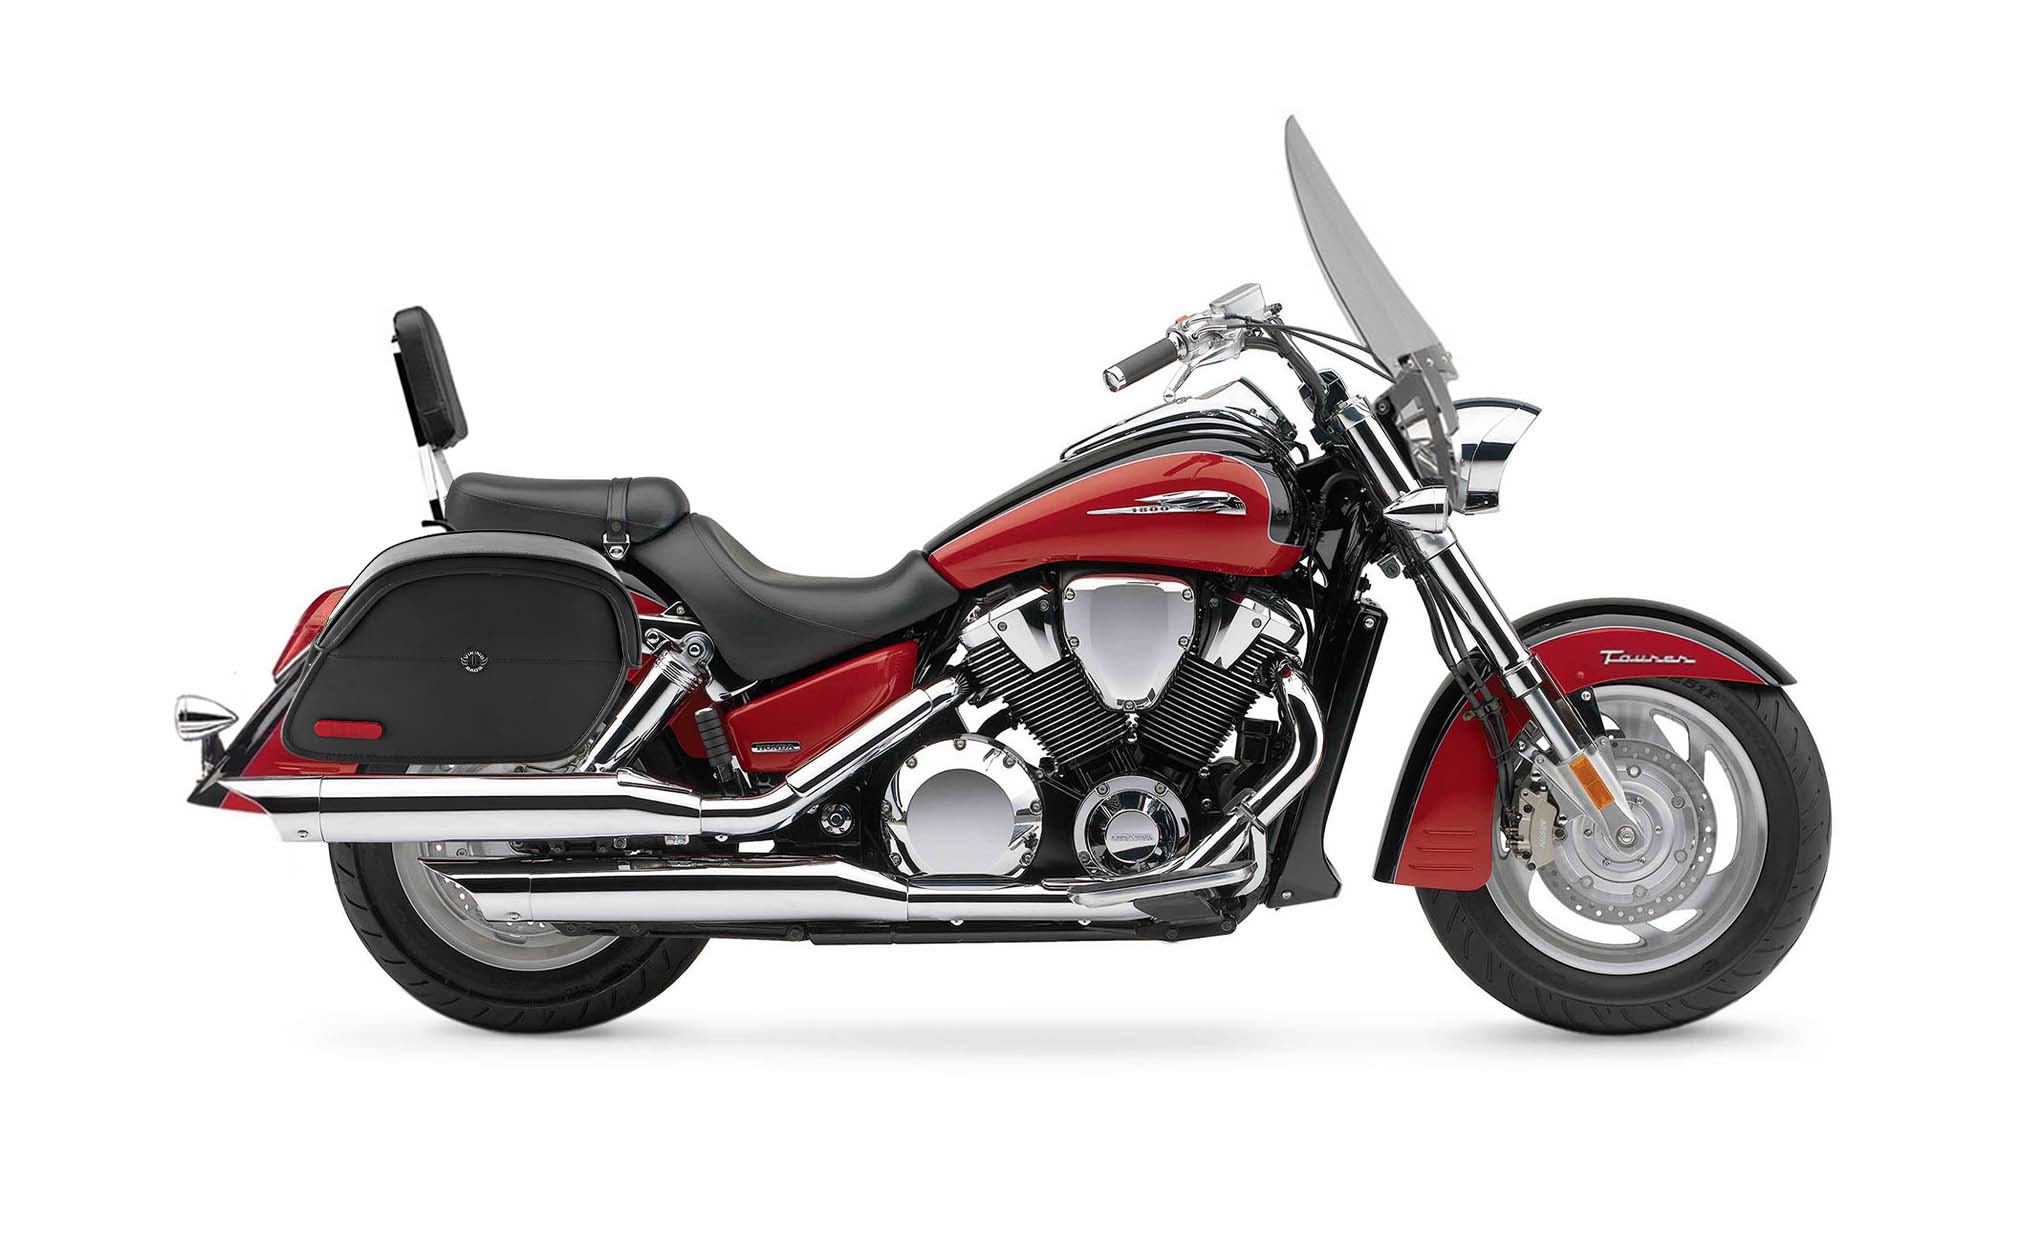 Viking California Large Honda Vtx 1800 T Tourer Leather Motorcycle Saddlebags on Bike Photo @expand